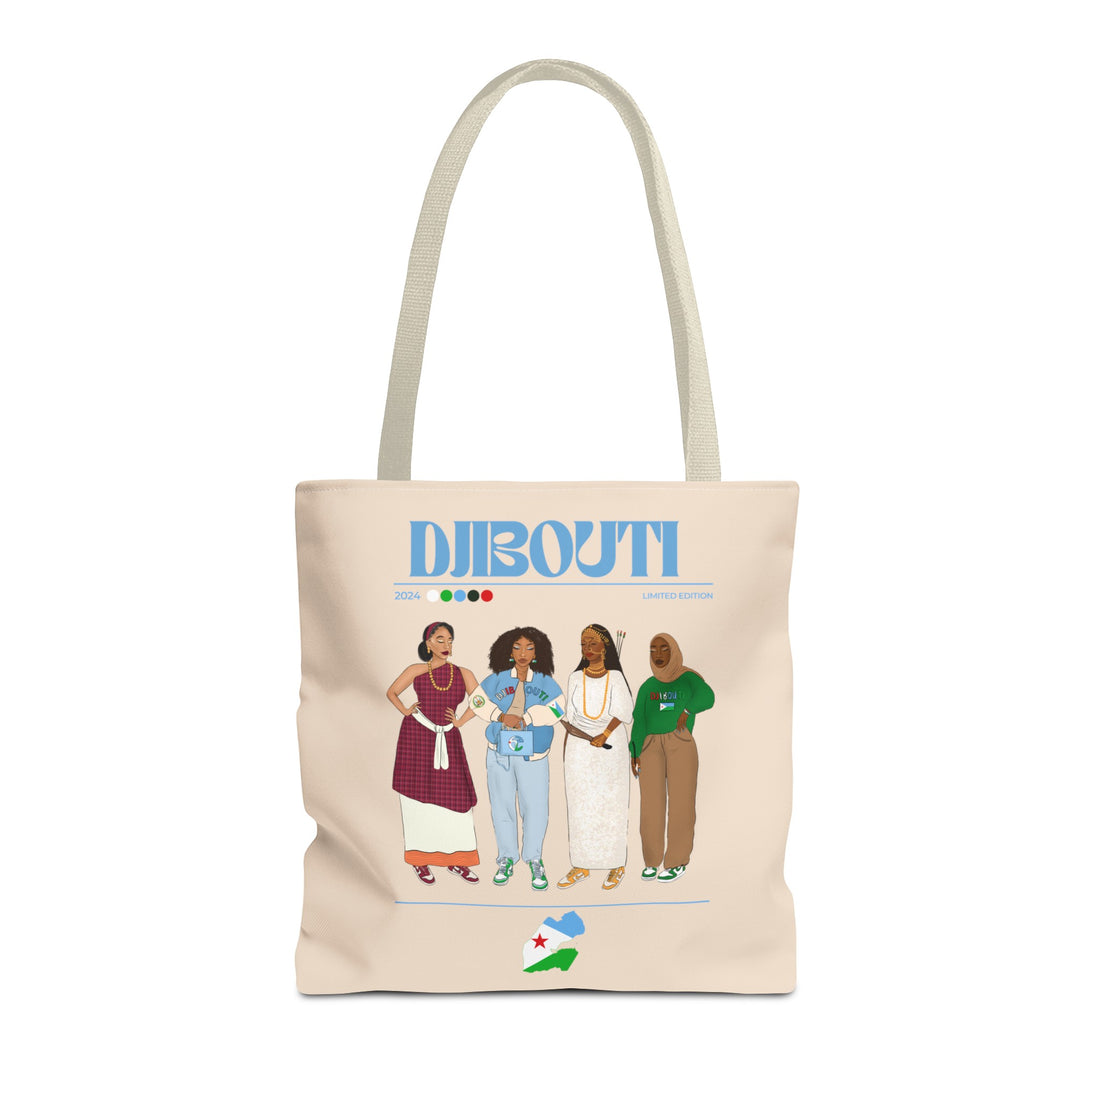 Djibouti x Streetwear Tote Bag